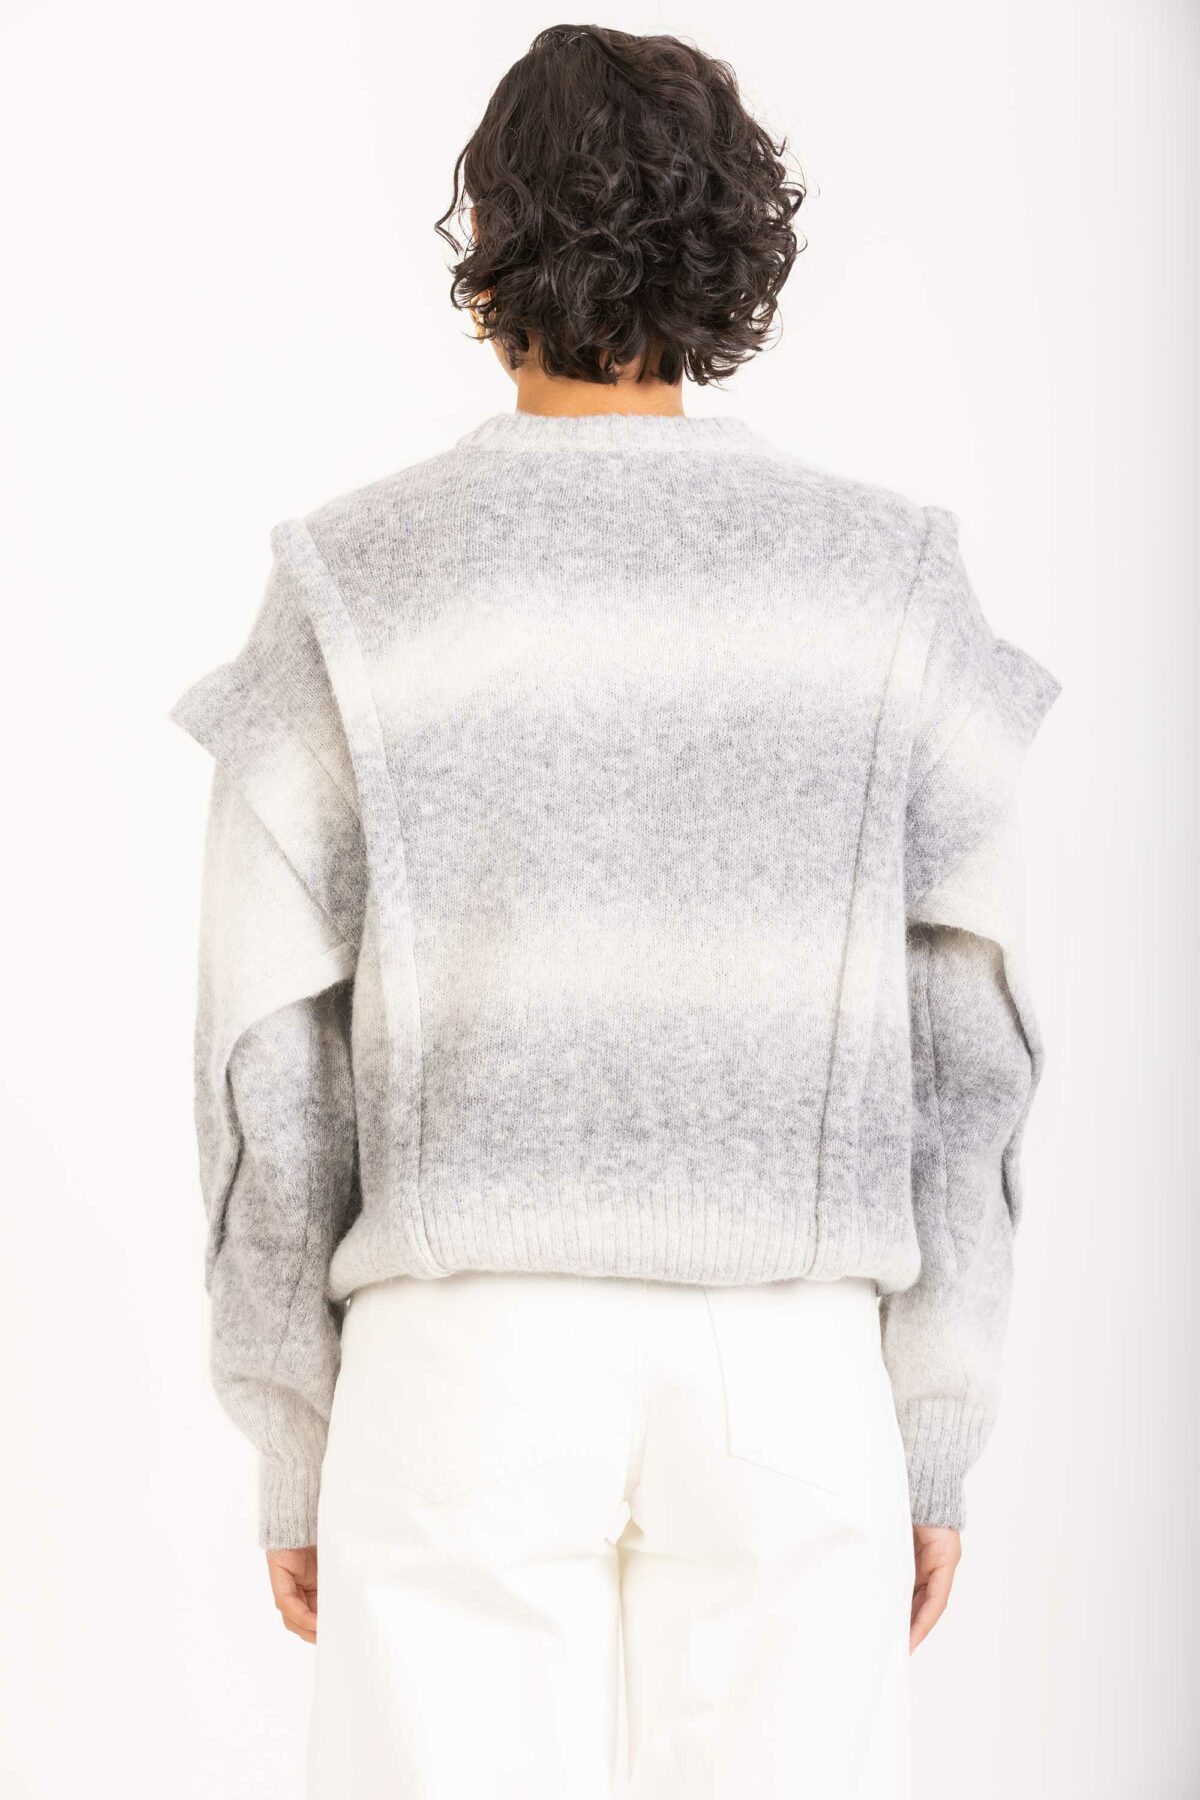 valya-sweater-wool-oversize-pronounced-shoulders-iro-matchboxathens